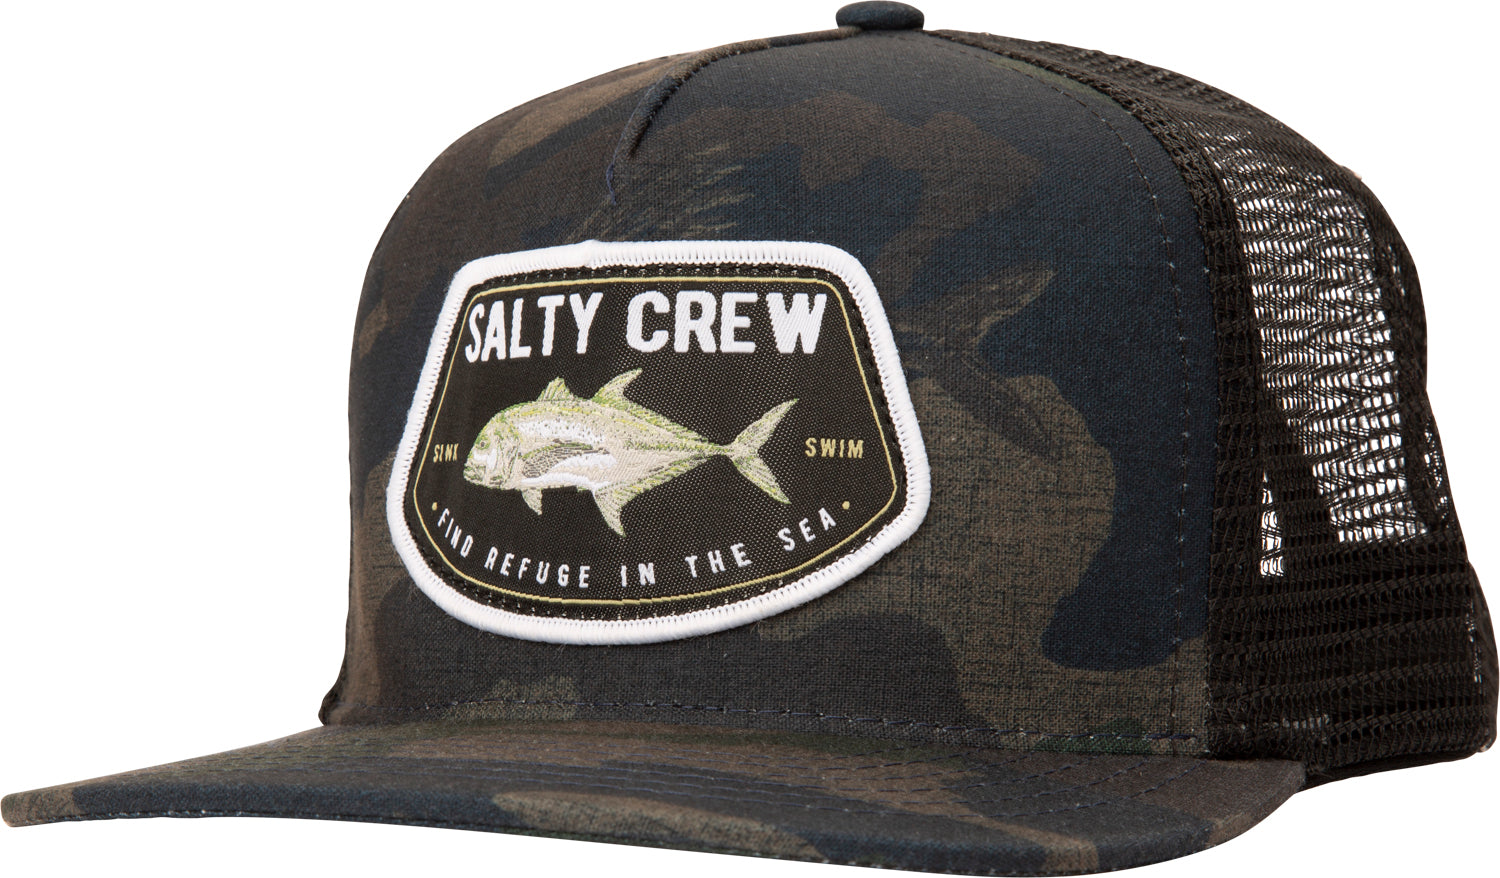 Salty Crew GT Trucker Hat - Black